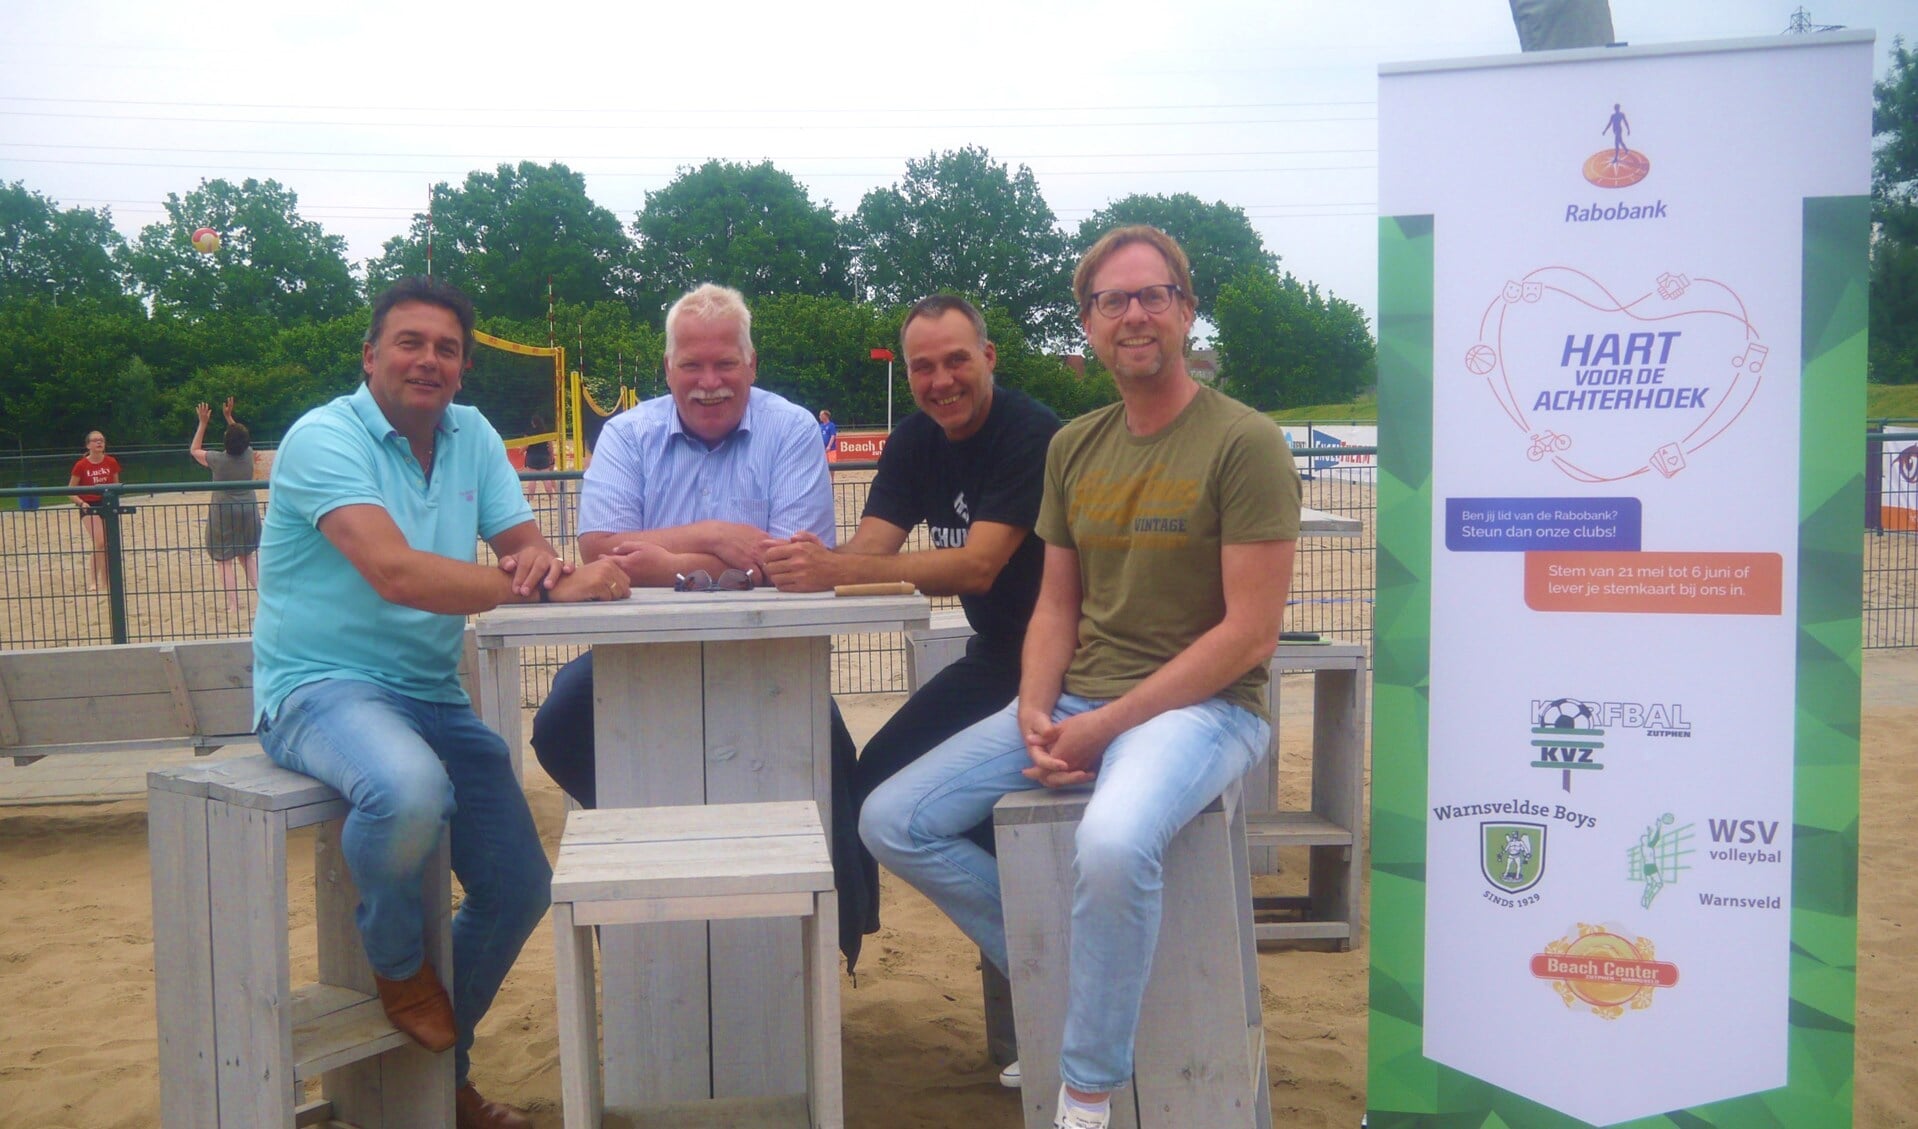 Henk Jan Milius (KVZ), Bas de Bruijn (Warnsveldse Boys), Max van Leeuwen (WSV Volleybal) en Jan Nijstad (Beach Center). Foto: PR